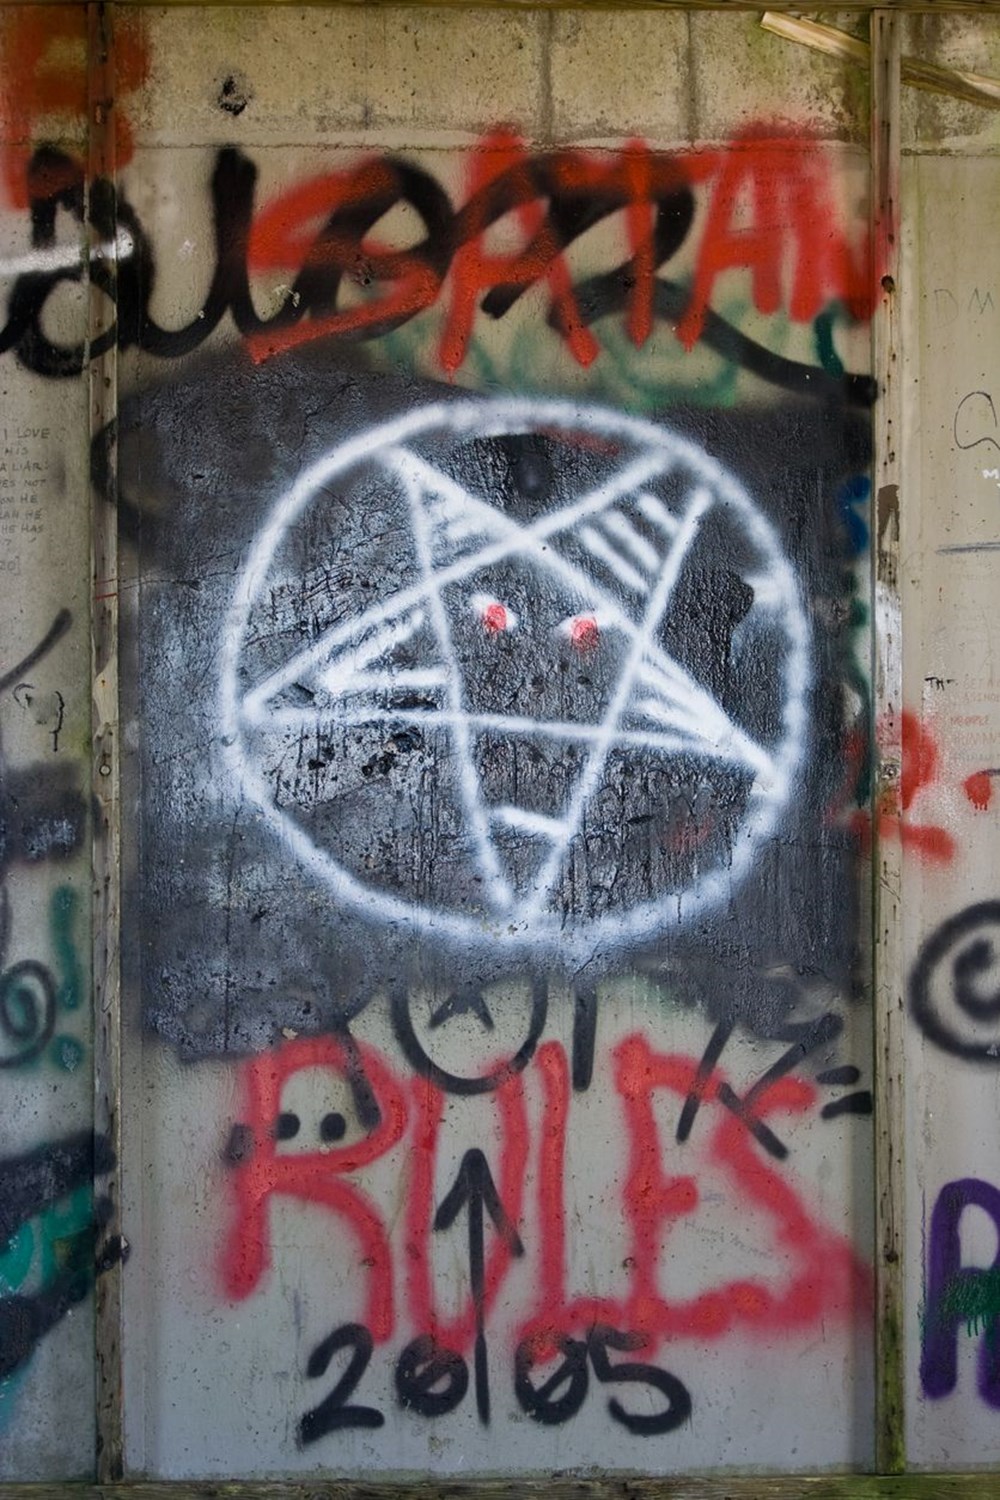 İngiltere'de Şeytan'a tapan gençlerin sayısı hızla artıyor (Satanizm nedir? Satanizm neden popülerleşiyor?) - 4